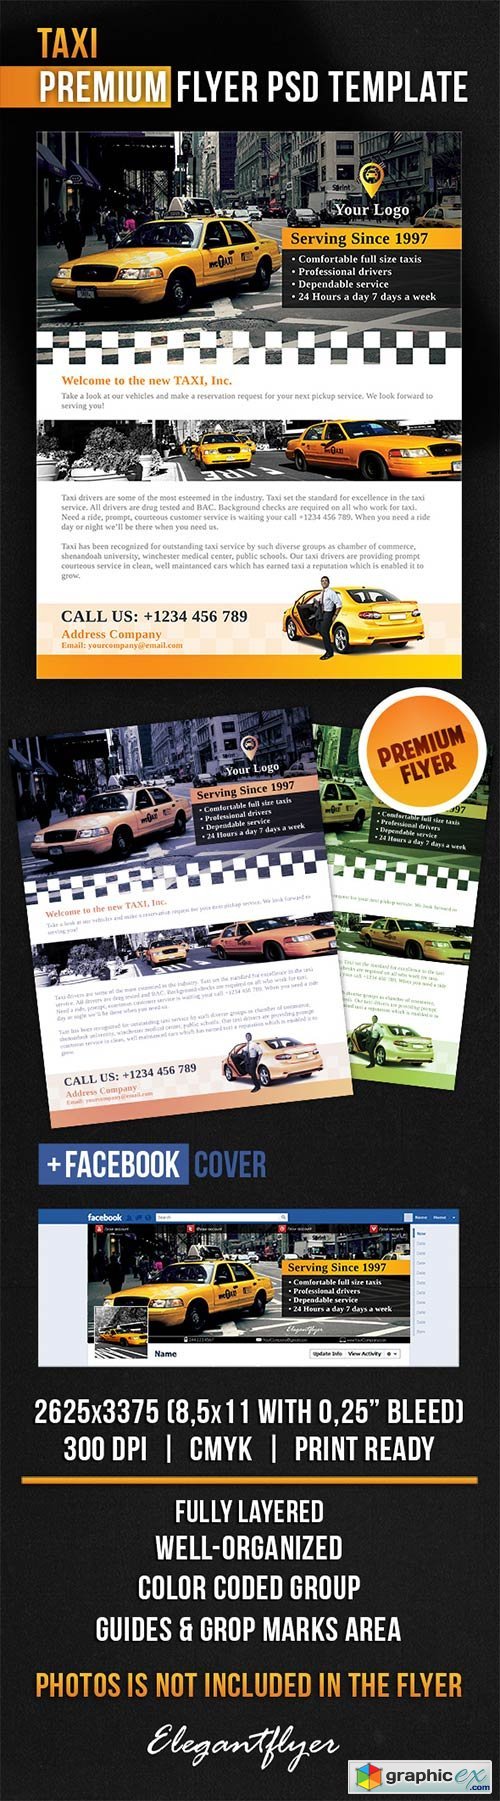 Taxi Flyer PSD Template + Facebook Cover